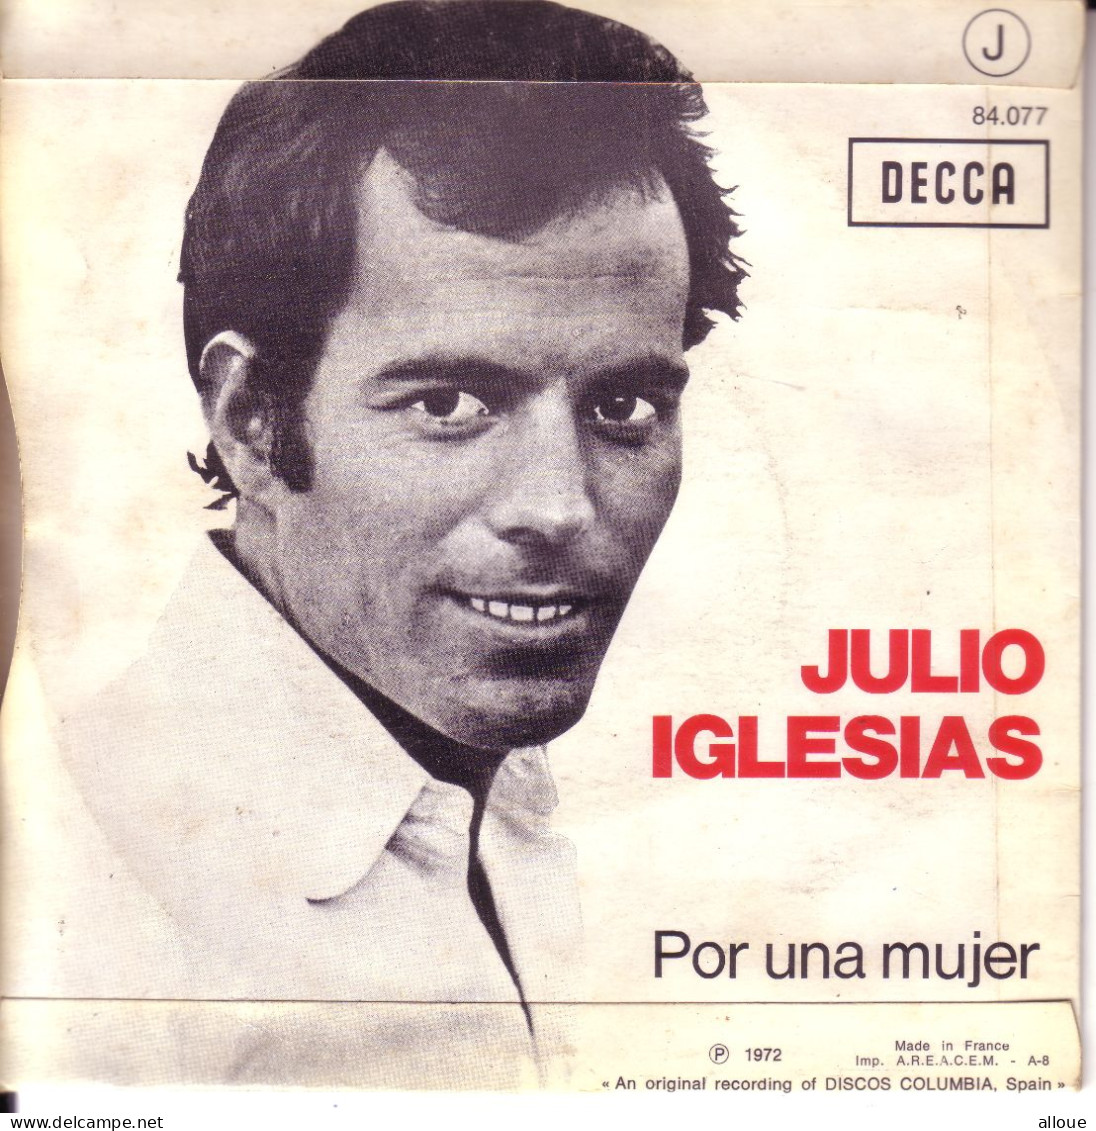 JULIO IGLESIAS - FR SP - UN CANTO A GALICIA + POR UNA MUJER - Autres - Musique Espagnole